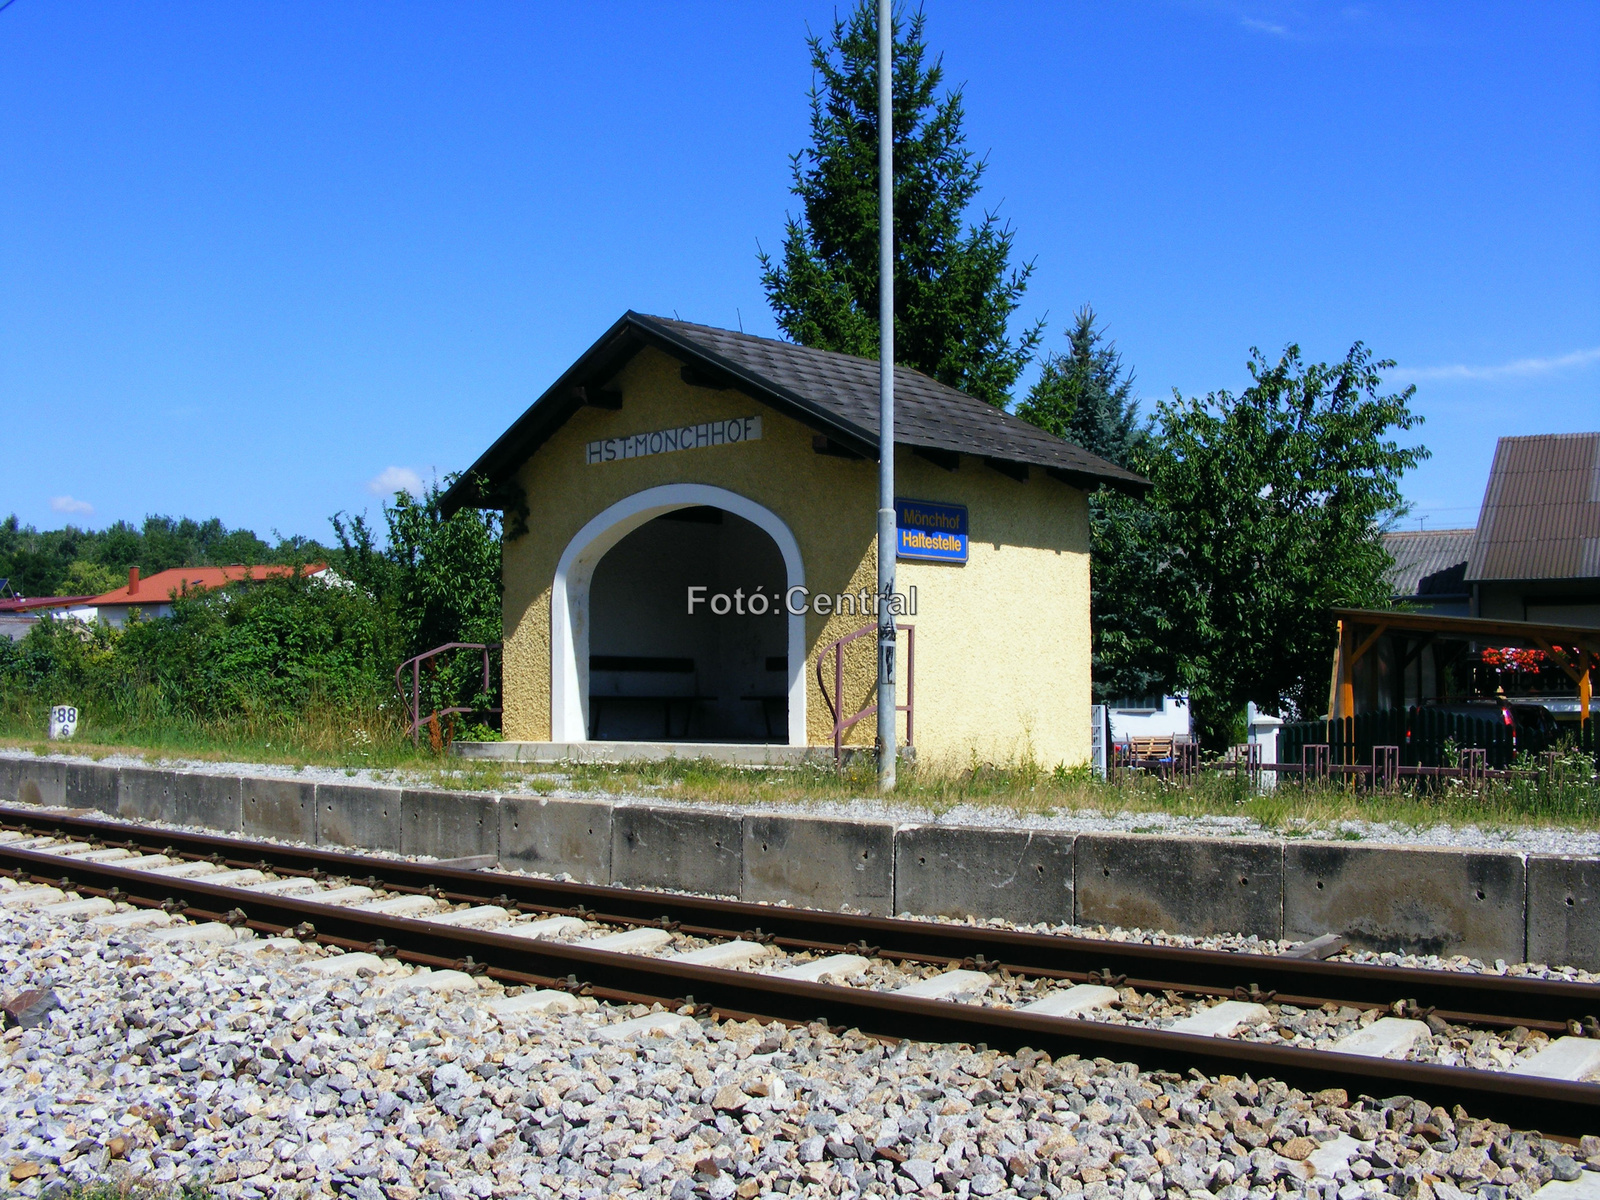 A megállóhely esőbeállója Barátudvar-Féltorony állomás felől néz